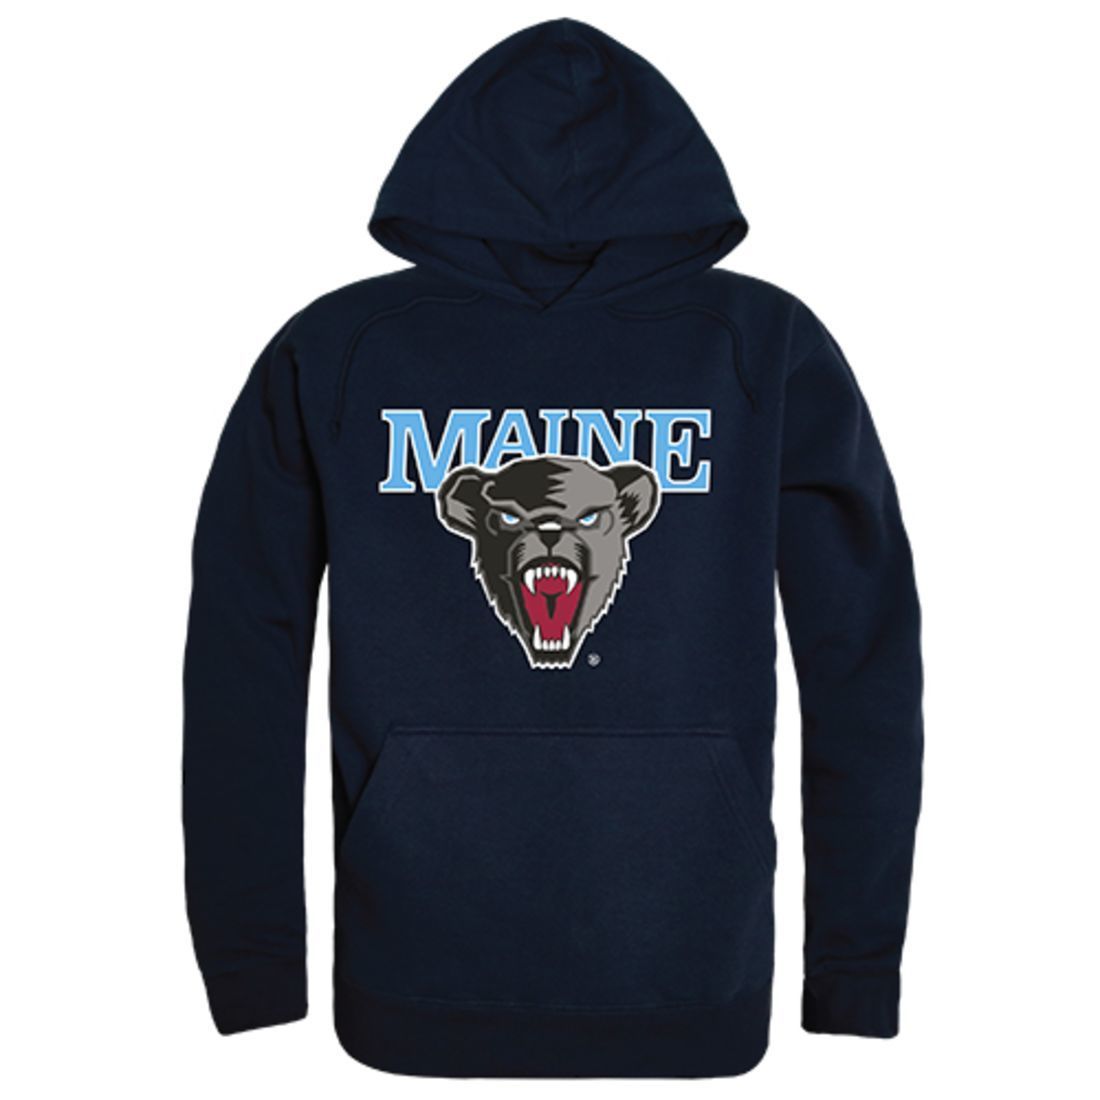 UMaine University of Maine Freshman Pullover Sweatshirt Hoodie Navy-Campus-Wardrobe